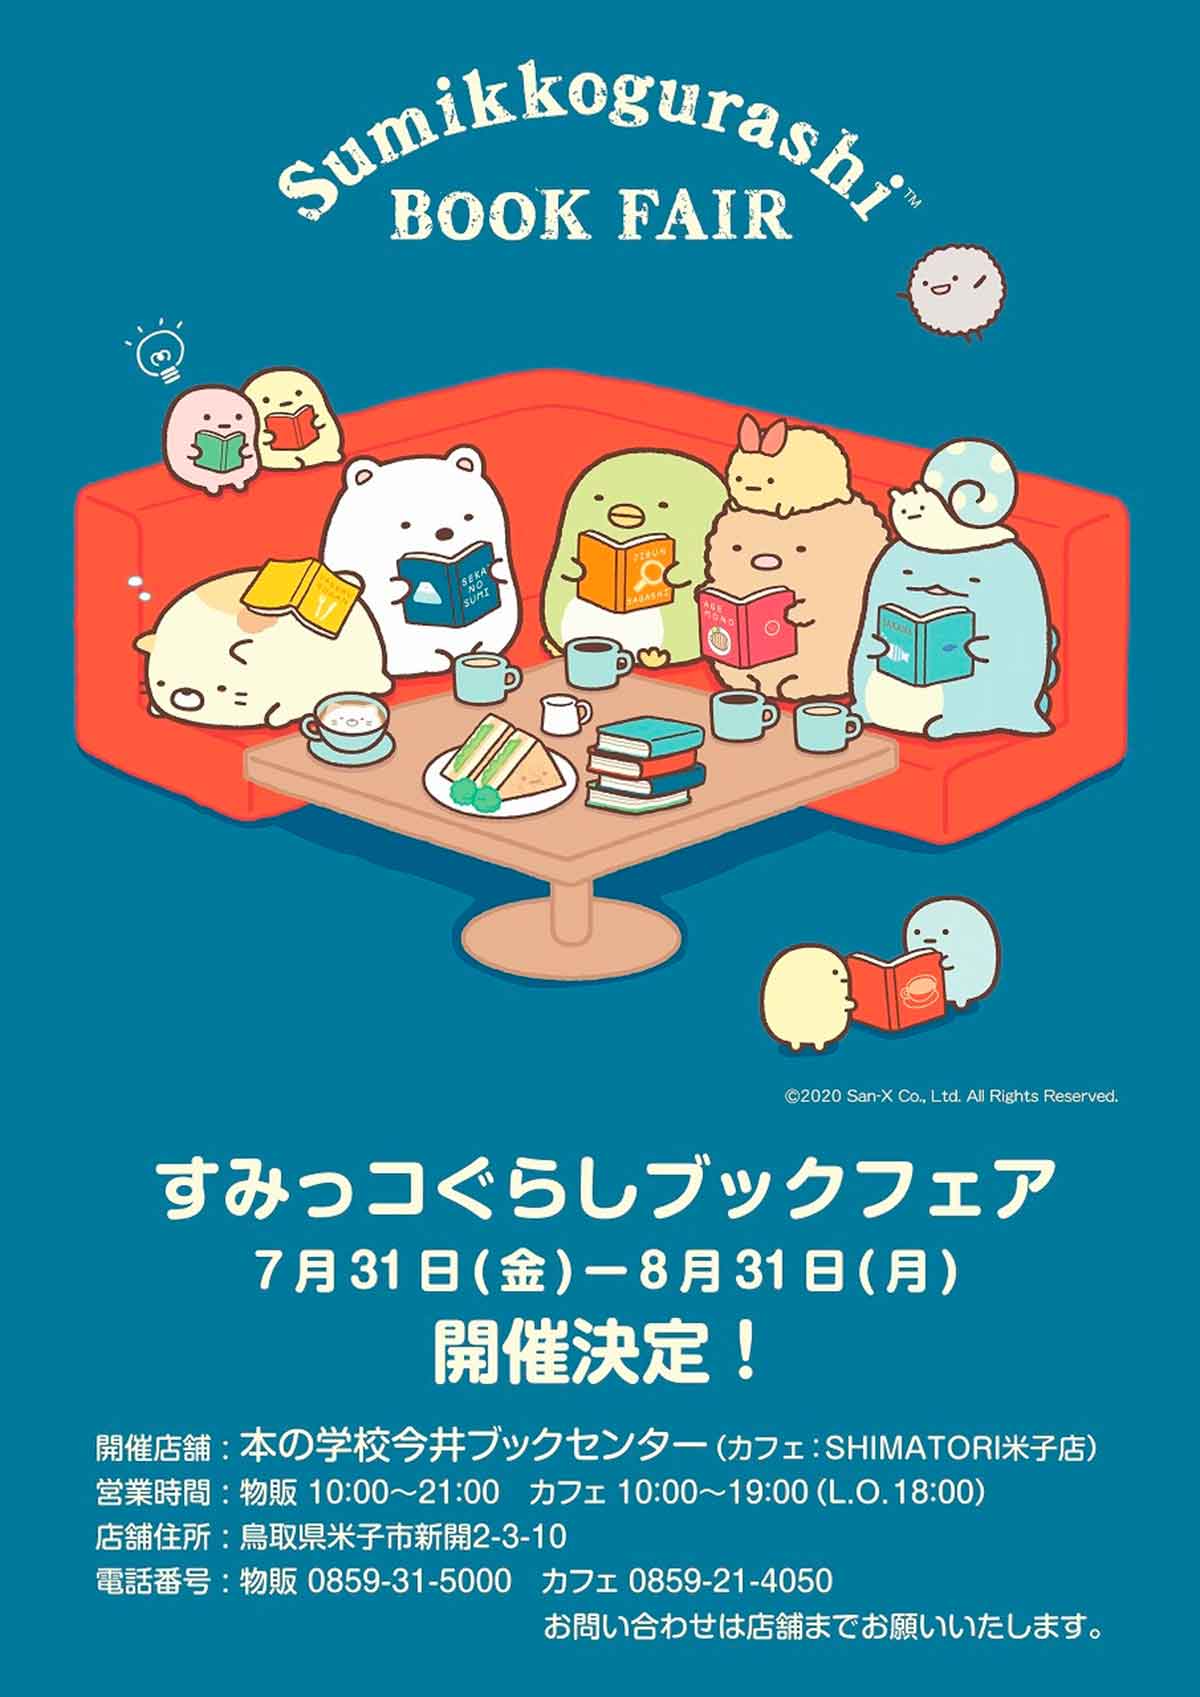 米子市 限定メニューも すみっコぐらし ブックカフェが Shimatori で開催 日刊lazuda ラズダ 島根 鳥取を知る 見る 食べる 遊ぶ 暮らすwebマガジン